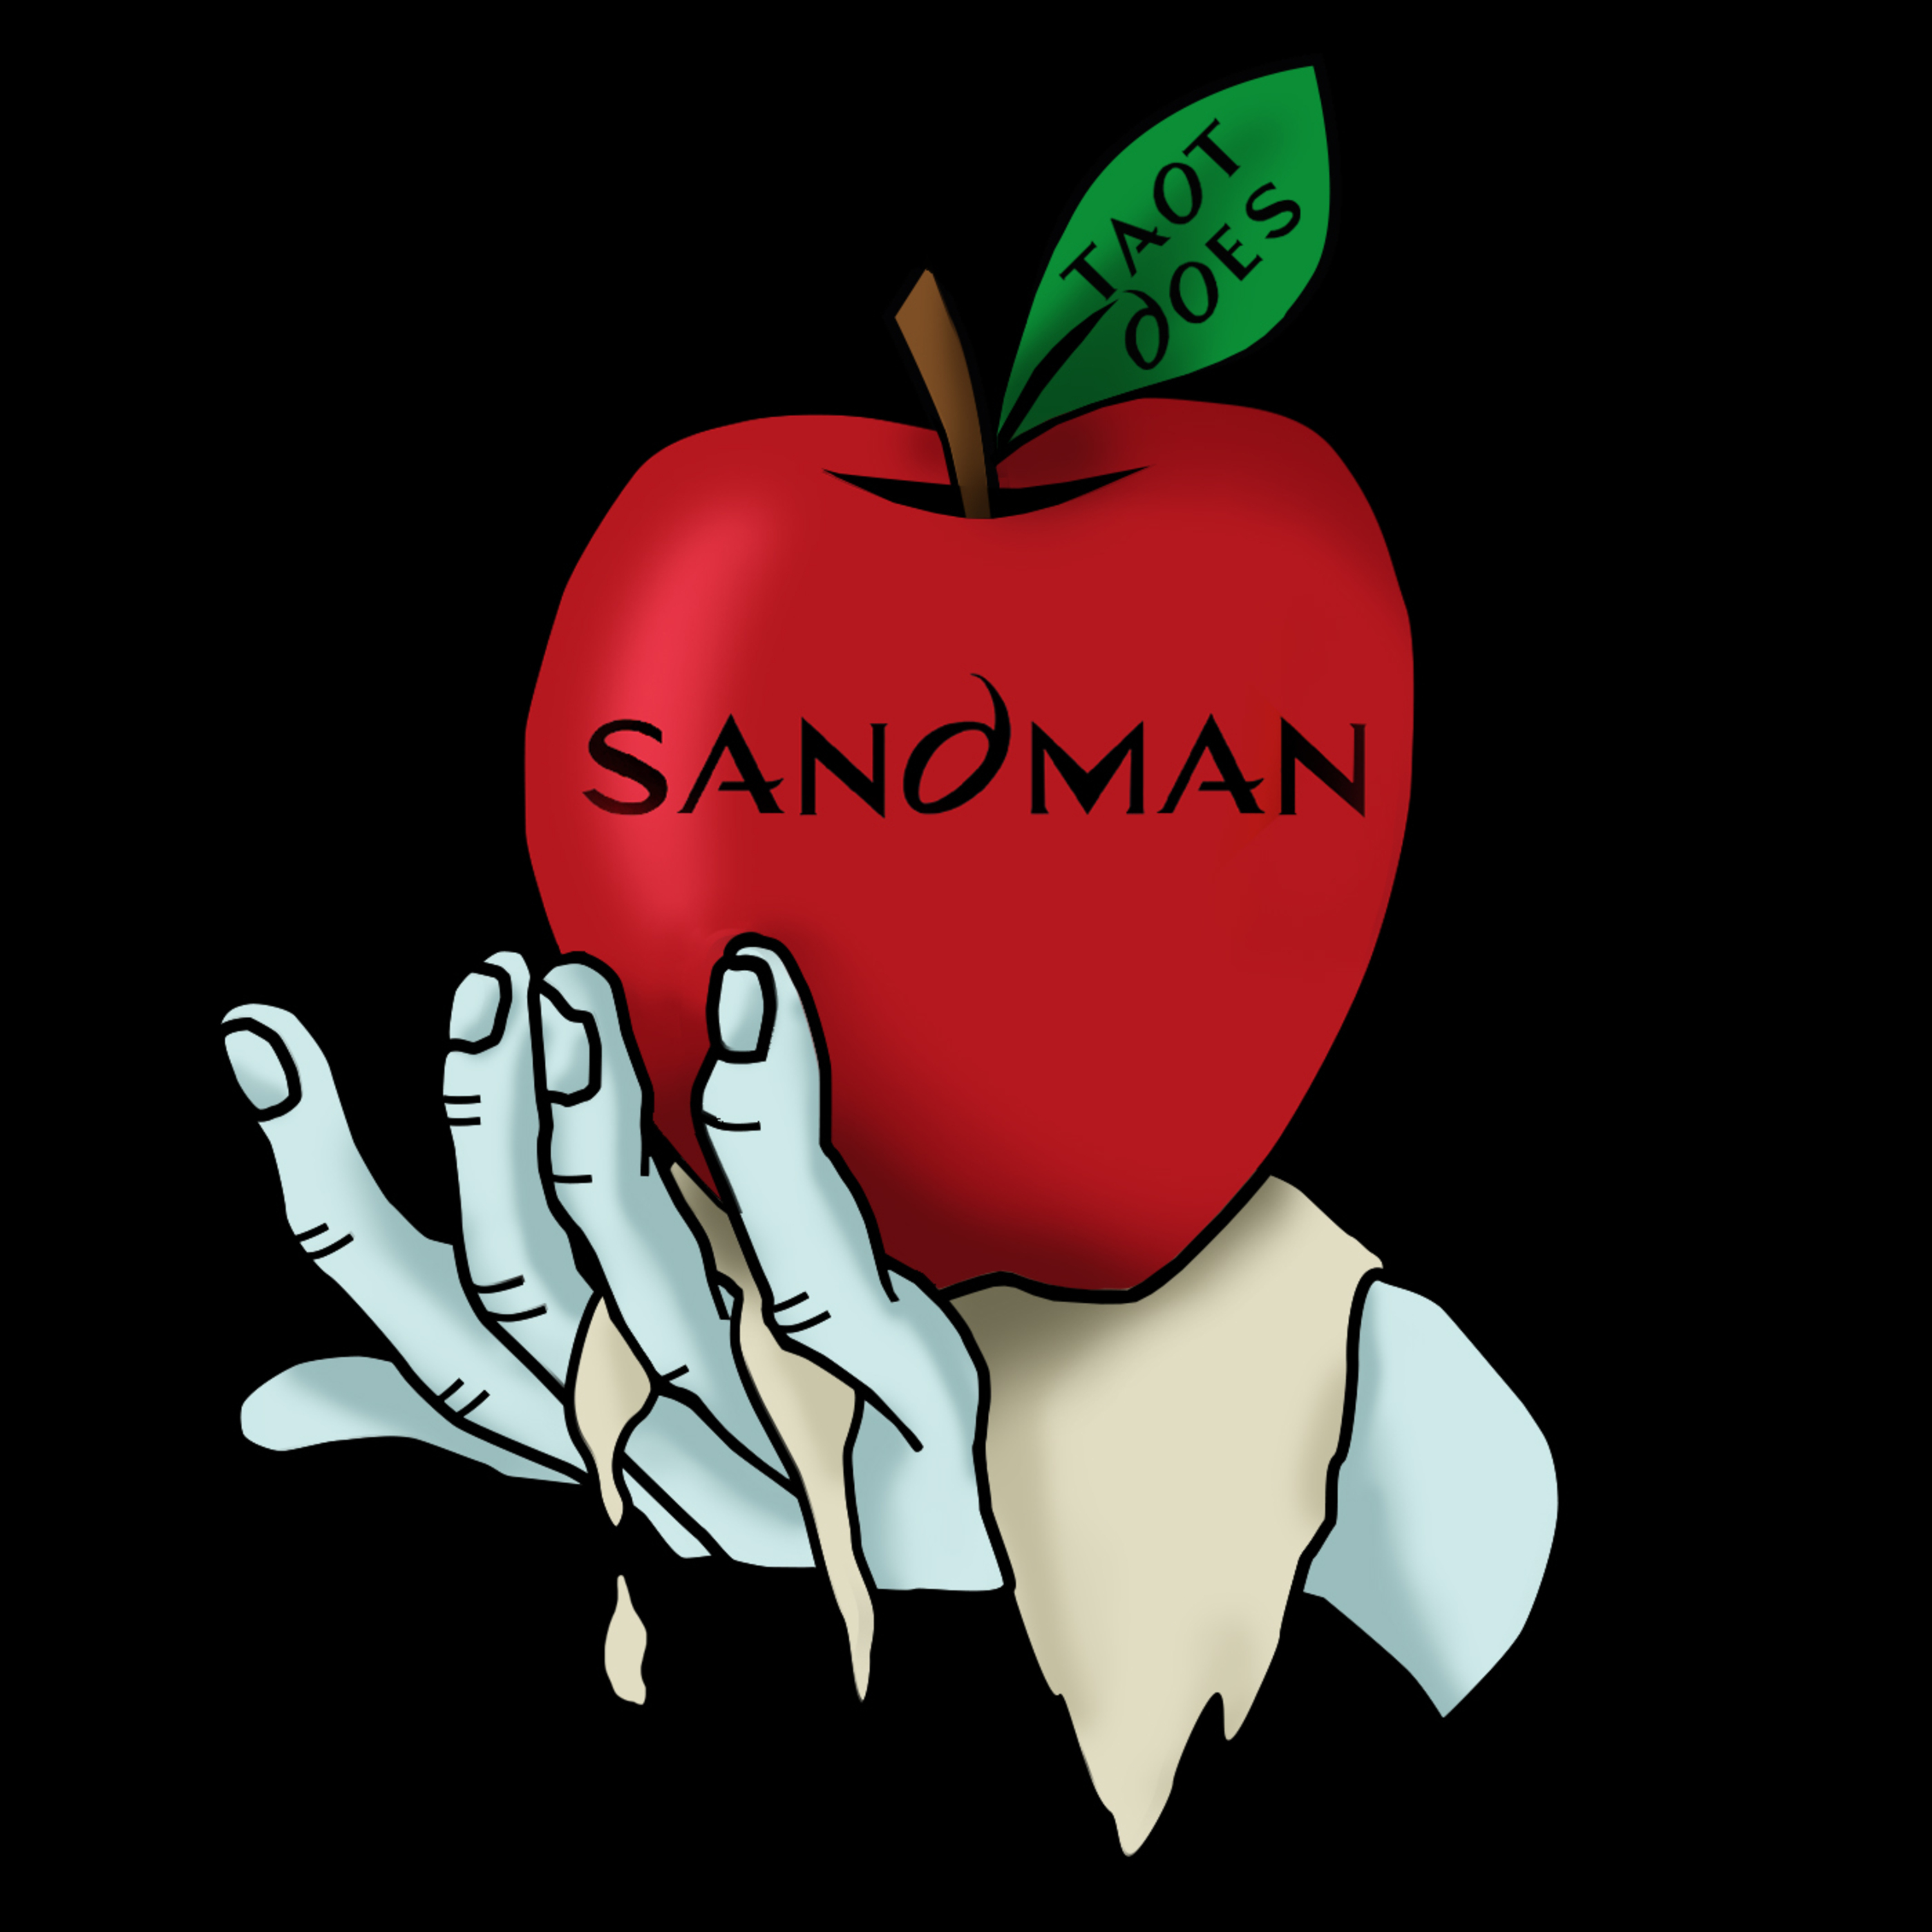 Episode 136: TAOT The Sandman S1E03